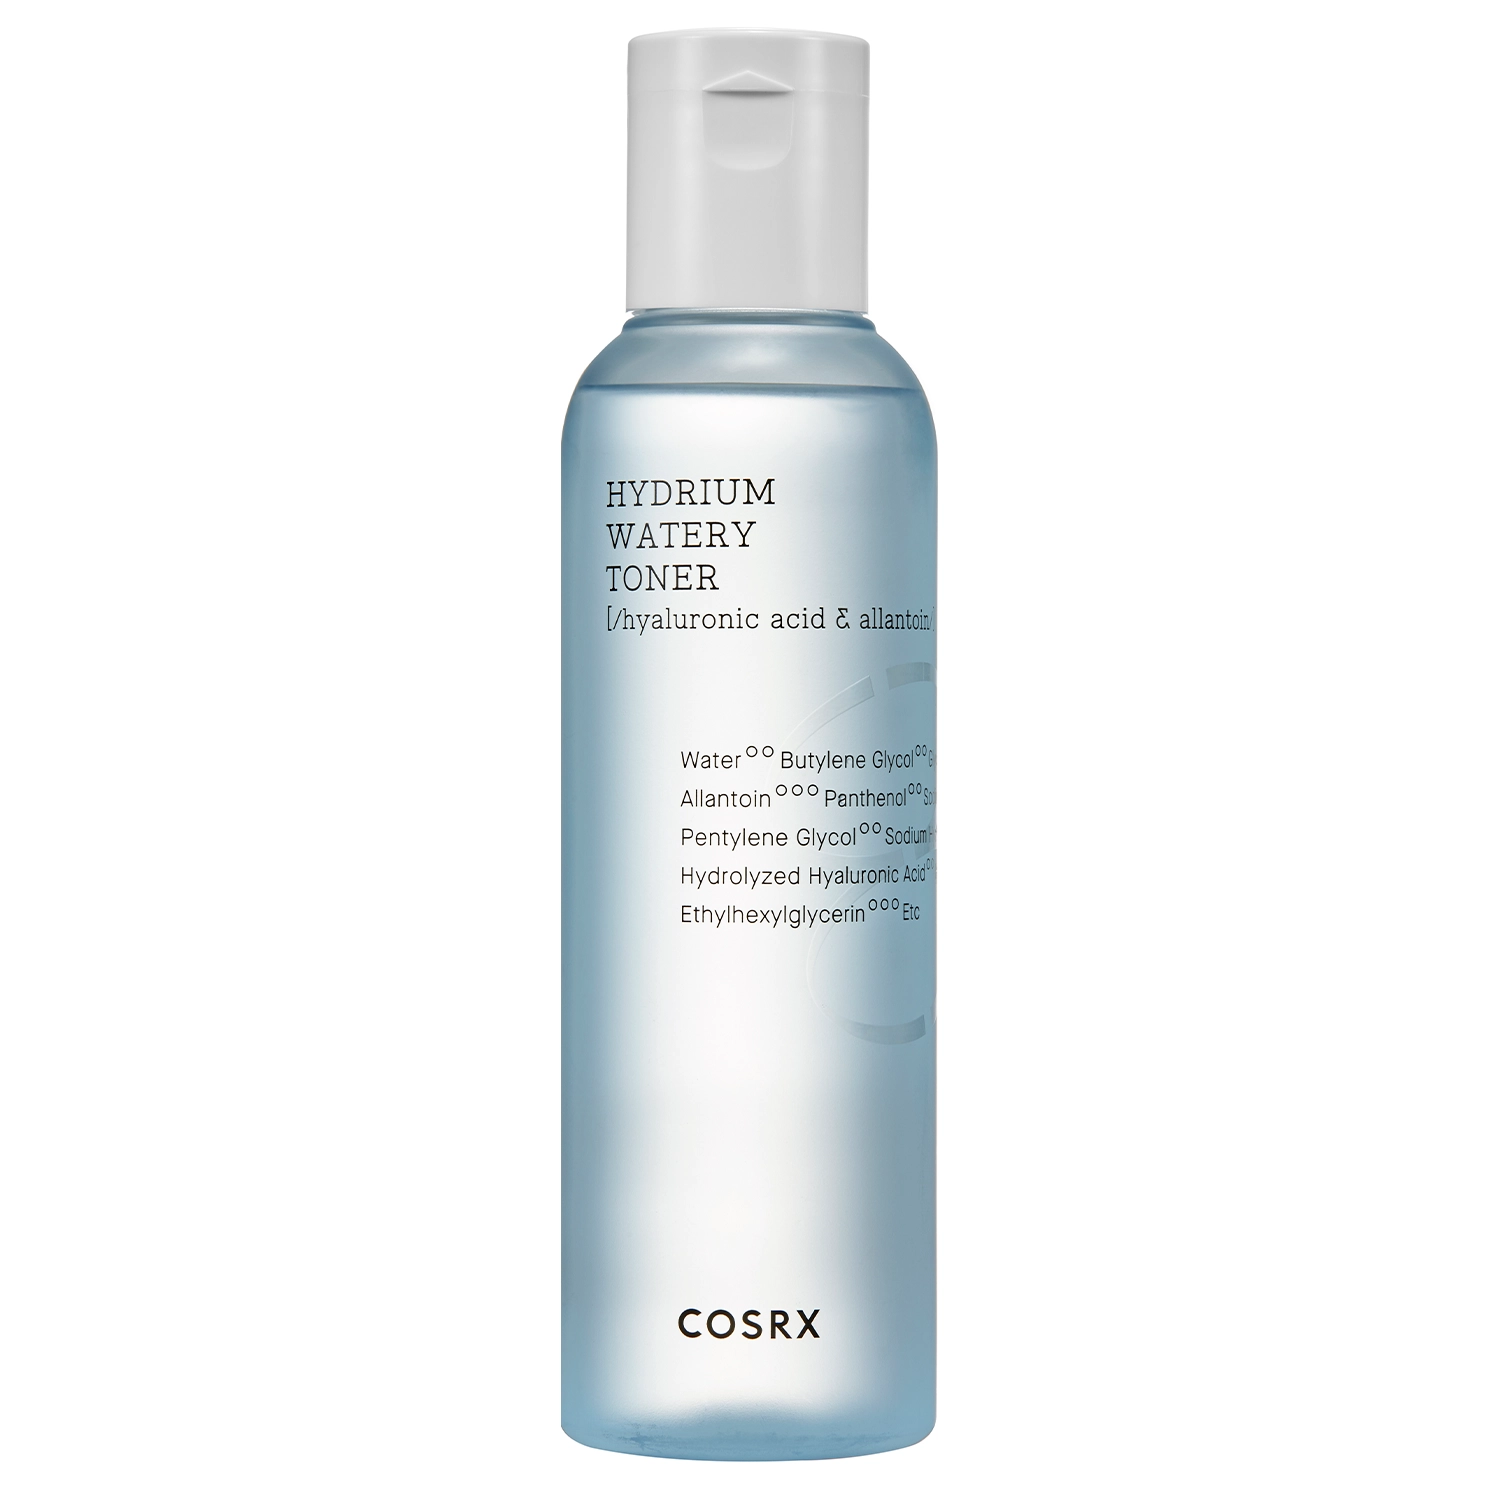 COSRX - Hydrium Watery Toner - Увлажняющий тонер для лица с гиалуроновой кислотой - 280ml